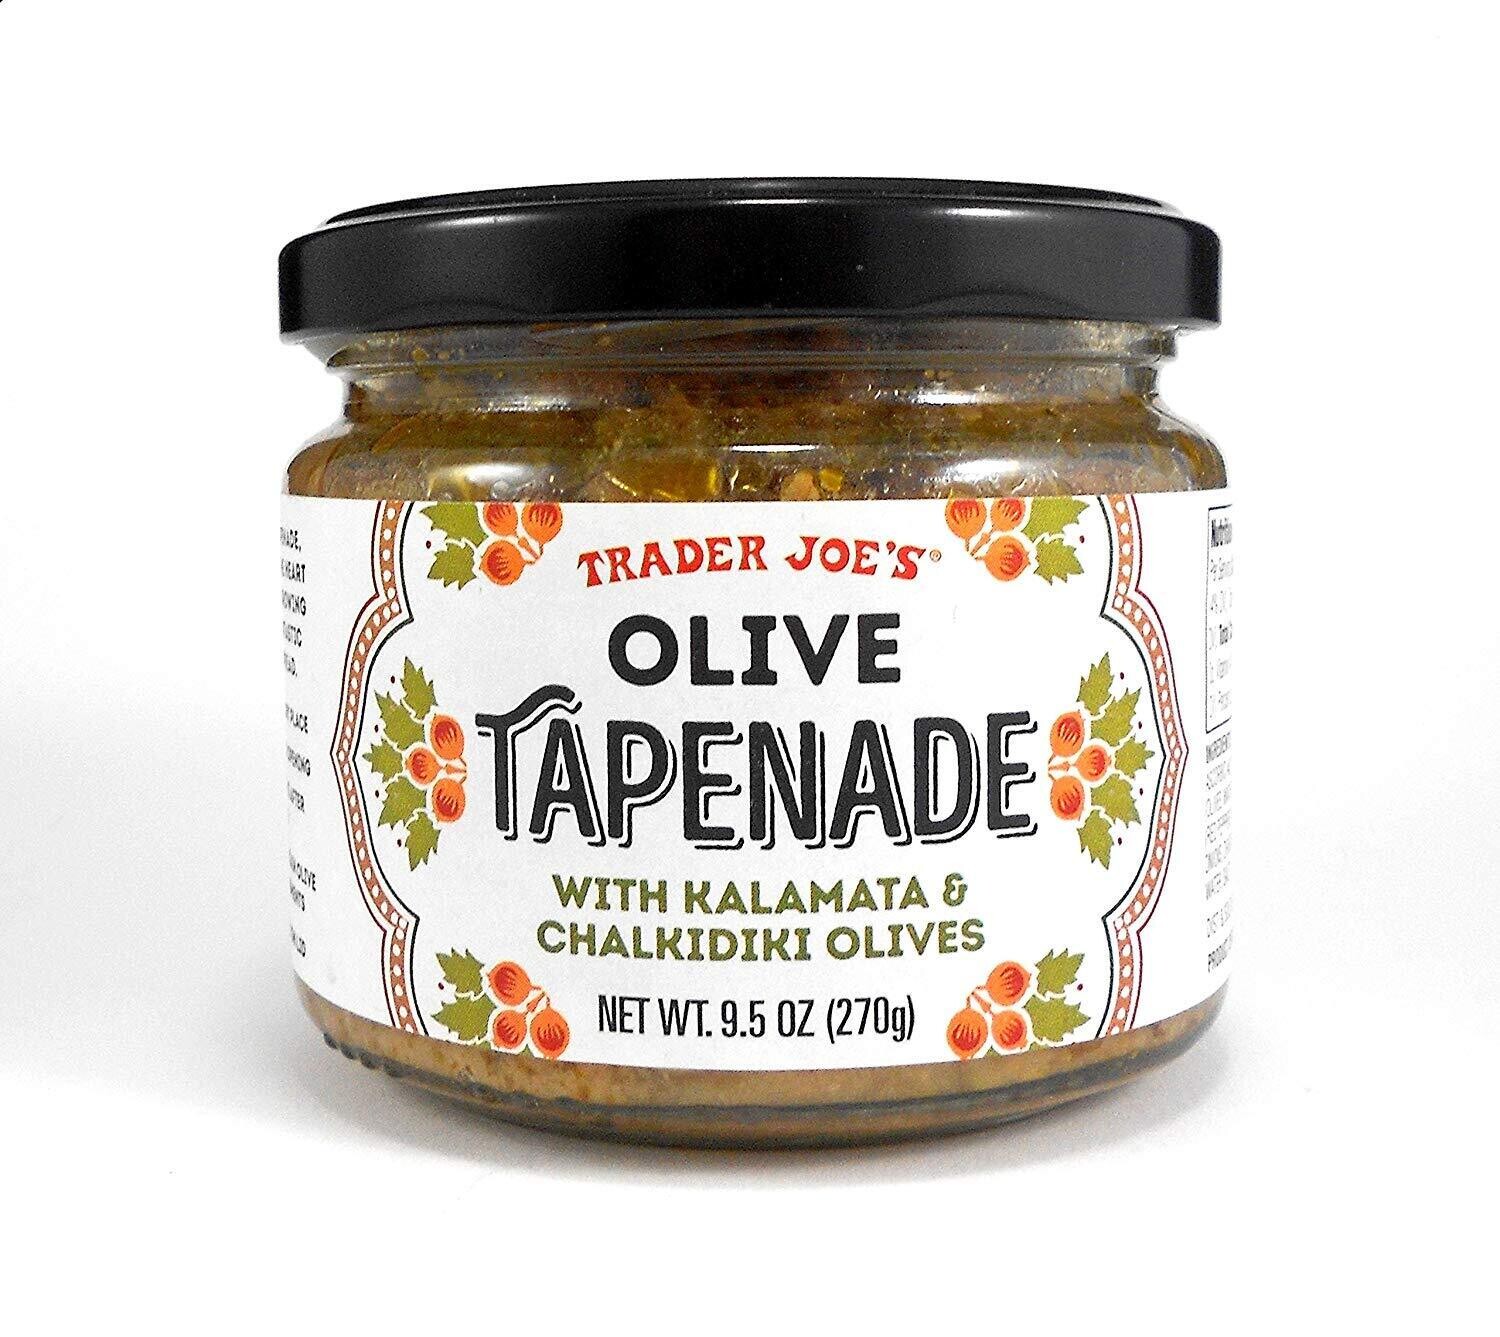 Trader Joe's Olive Tapenade with Kalamata & Chalkidiki